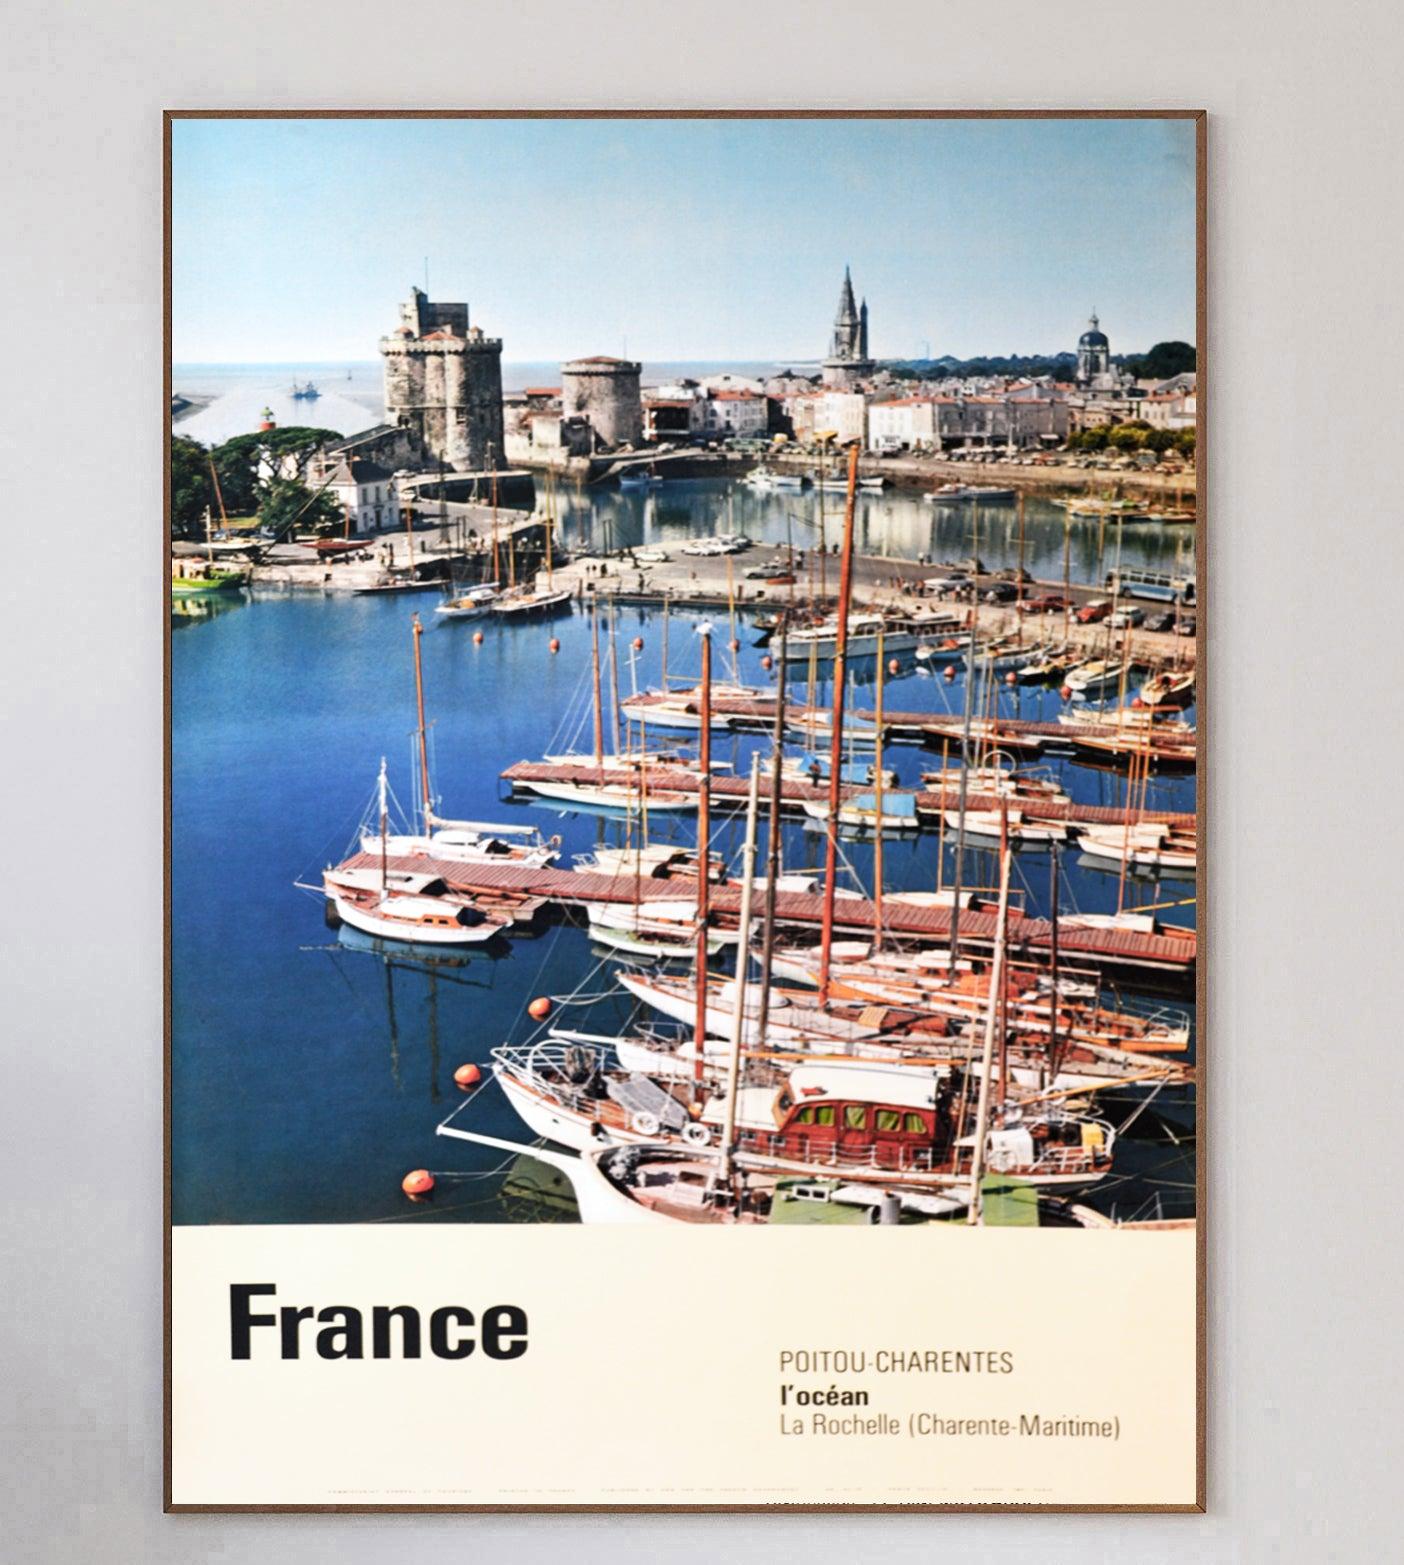 Magnifique affiche promouvant la région du Poitou Carantes sur la côte sud-ouest de la France. Imprimée en 1963 par Draeger, cette affiche de voyage originale a été créée pour l'Office du tourisme de France.

Représentant une journée ensoleillée sur